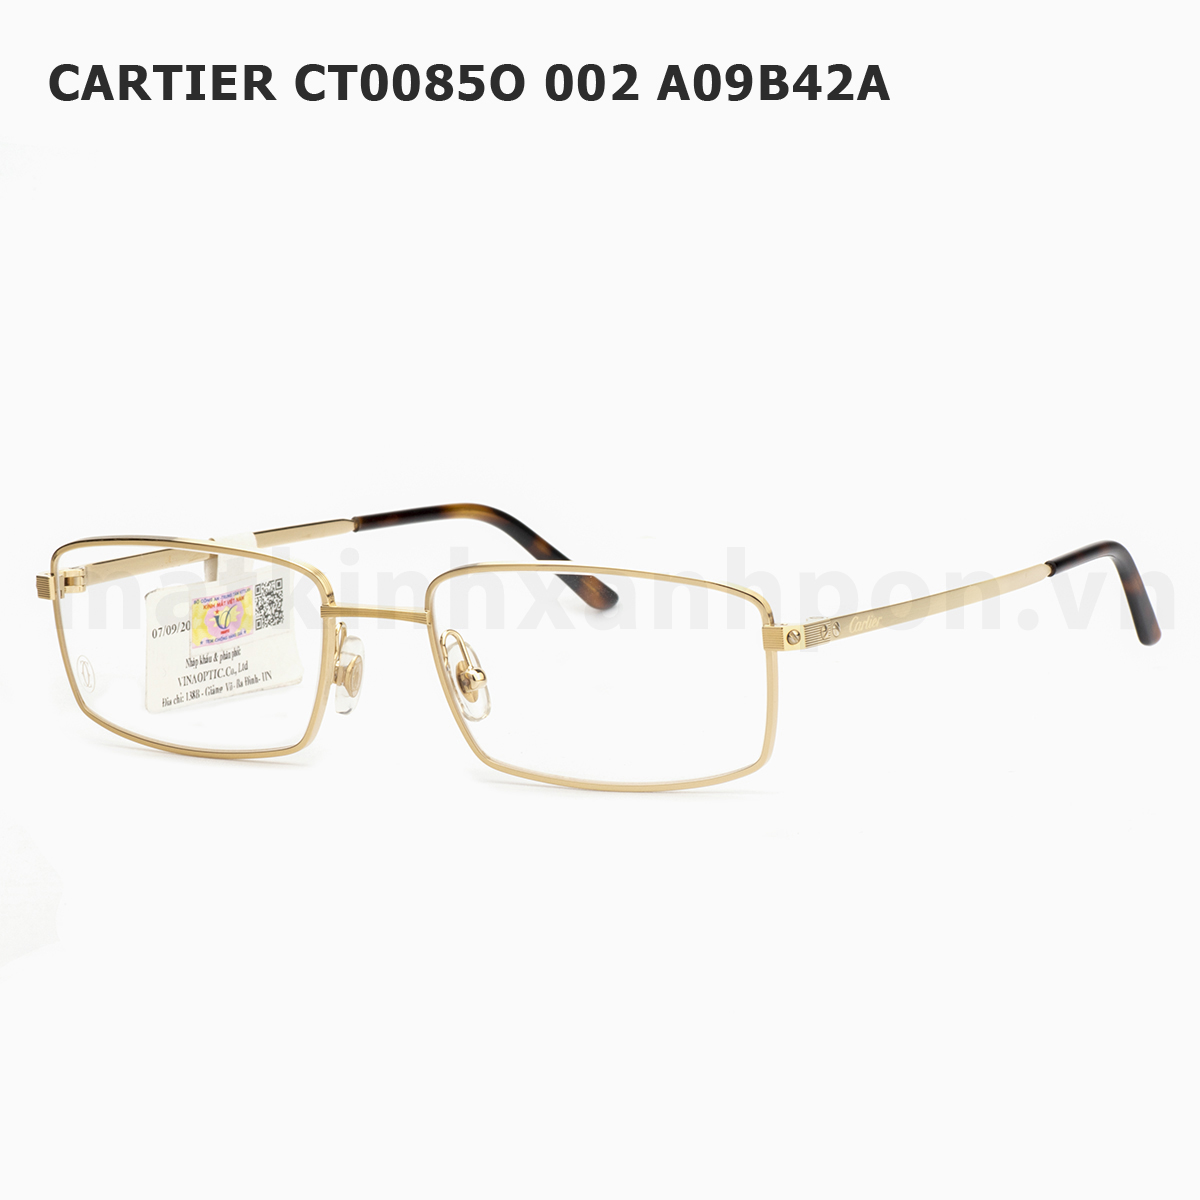 Cartier CT0085O 002 A09B42A